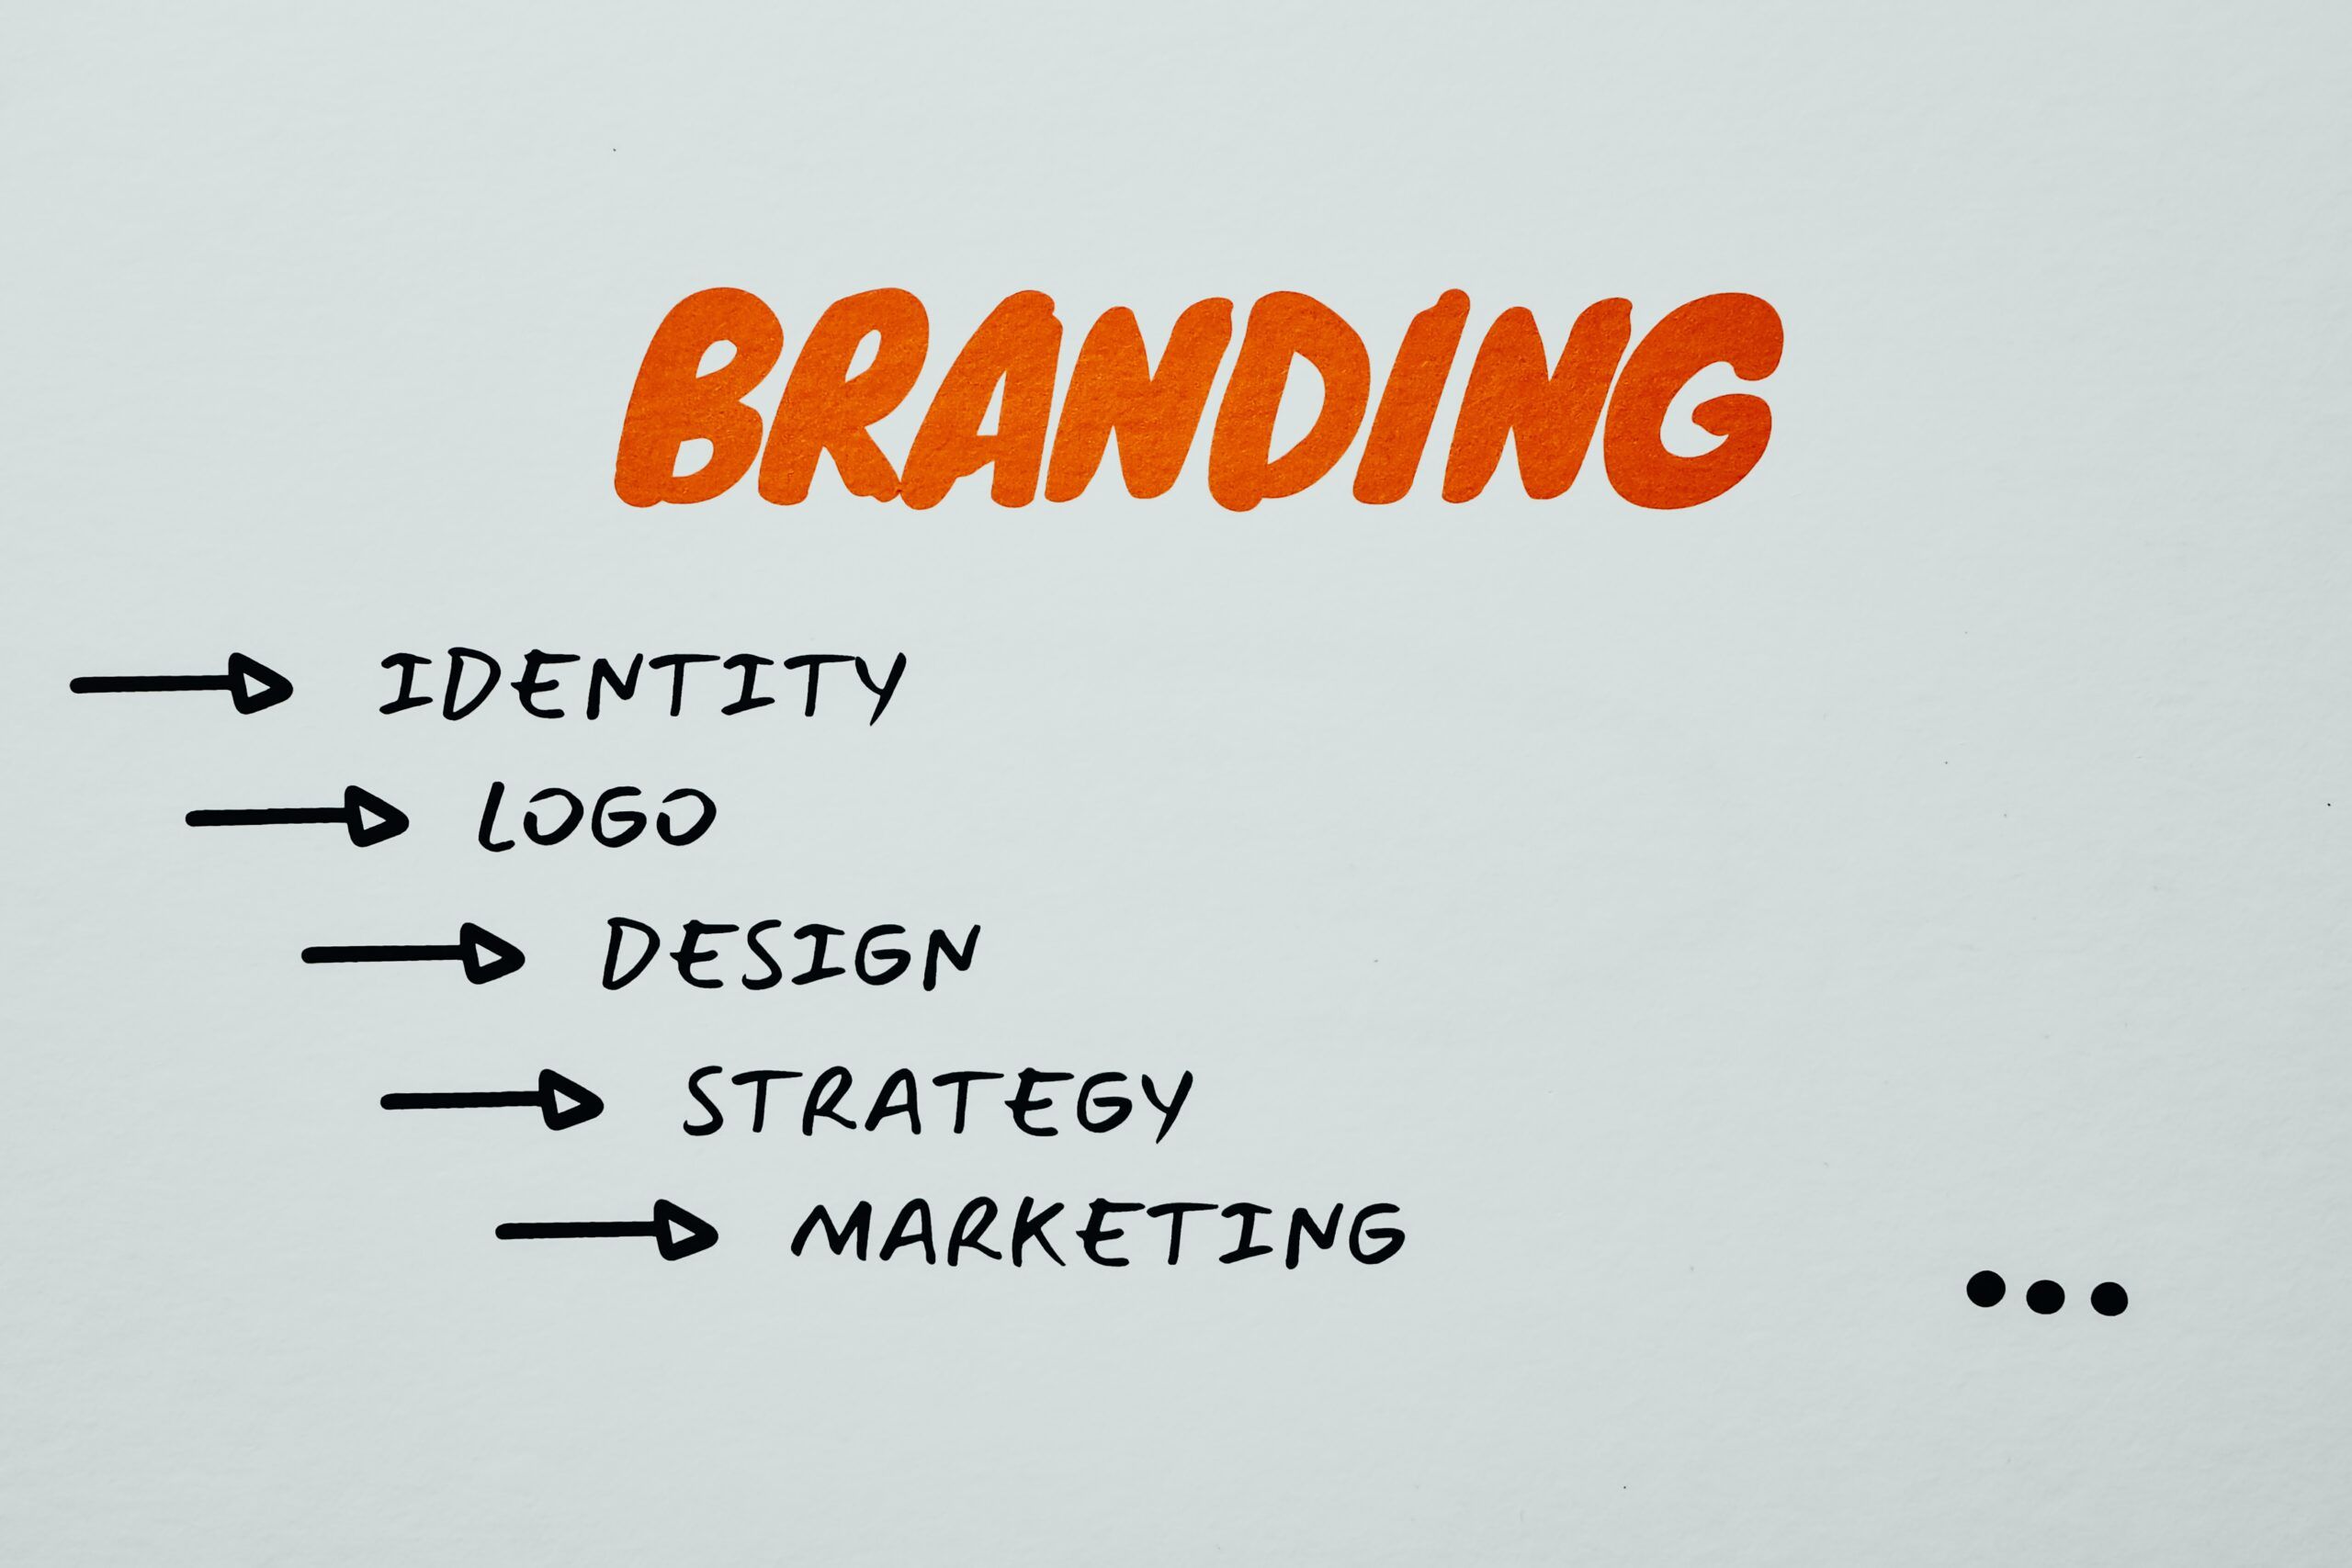 Brand Awareness: ¿Cómo aumentar el conocimiento de una marca?